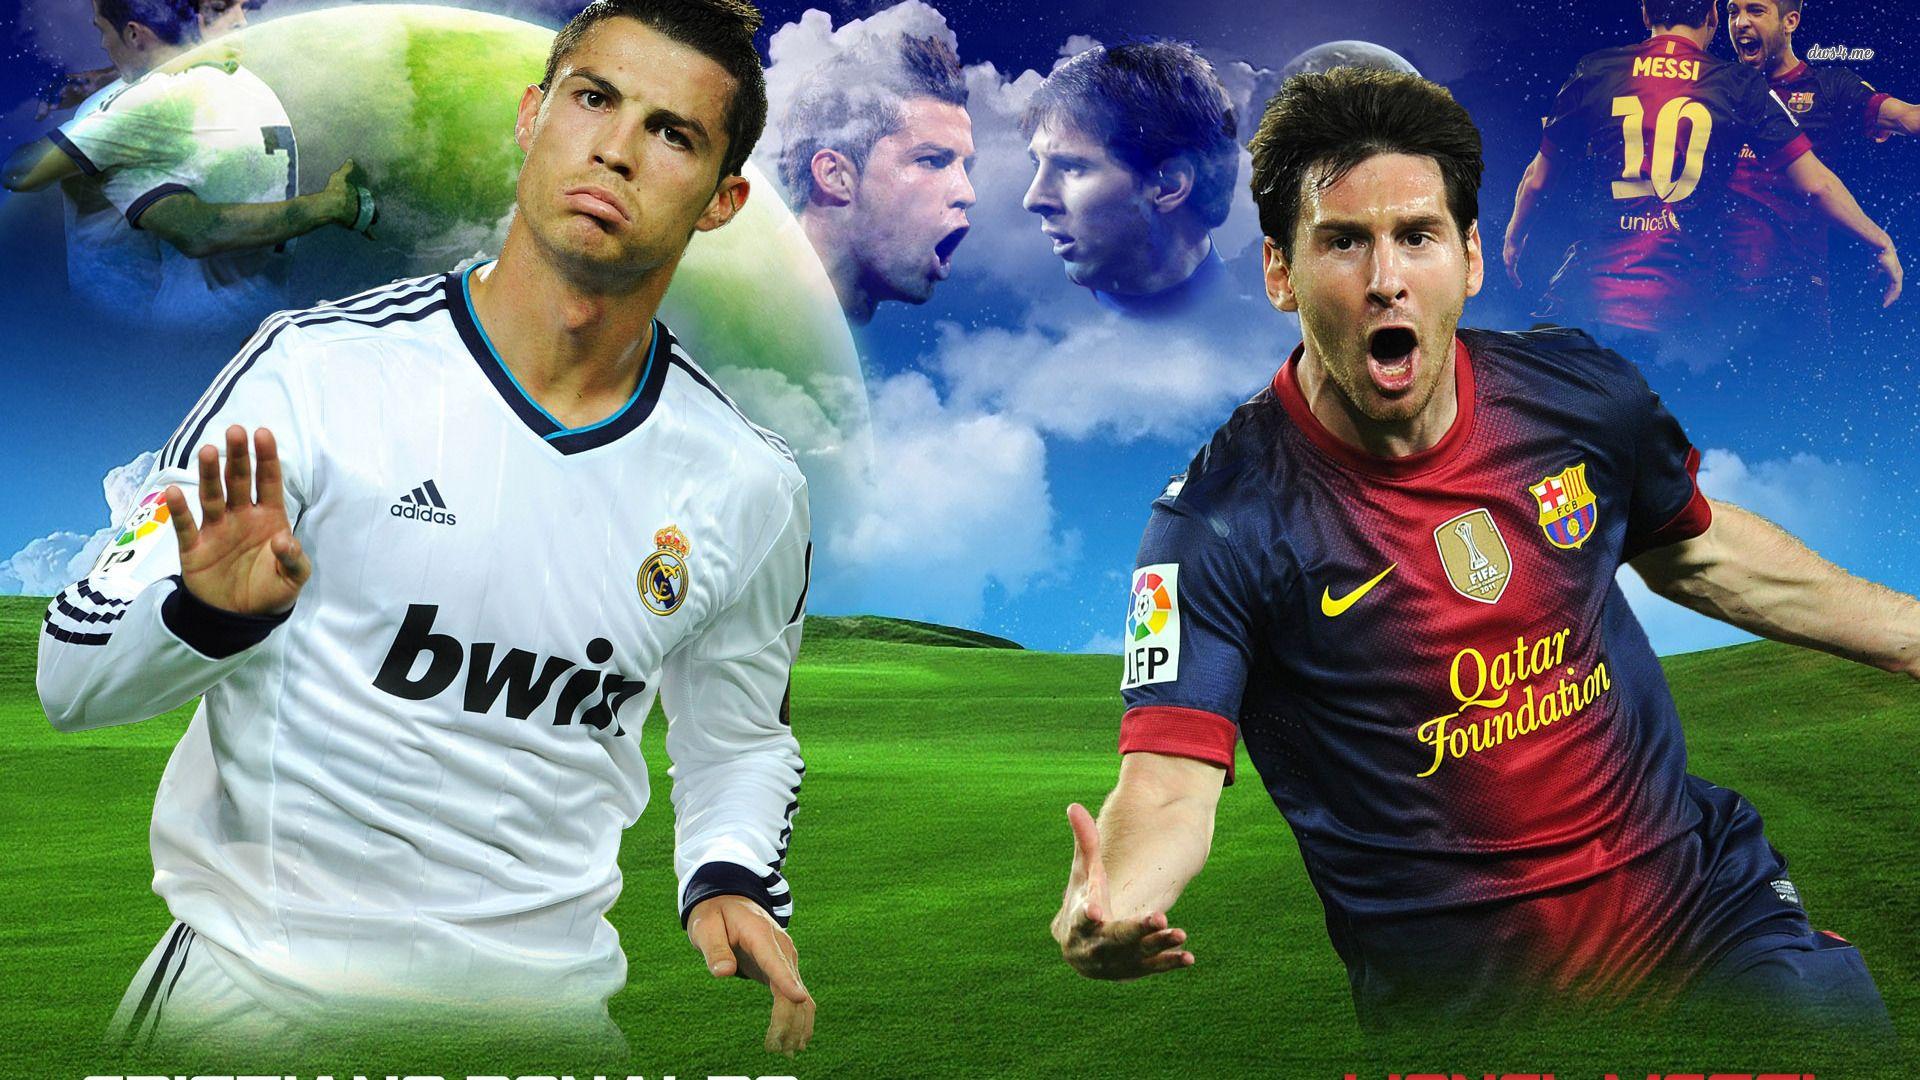 Lionel Messi vs Cristiano Ronaldo wallpaper wallpaper